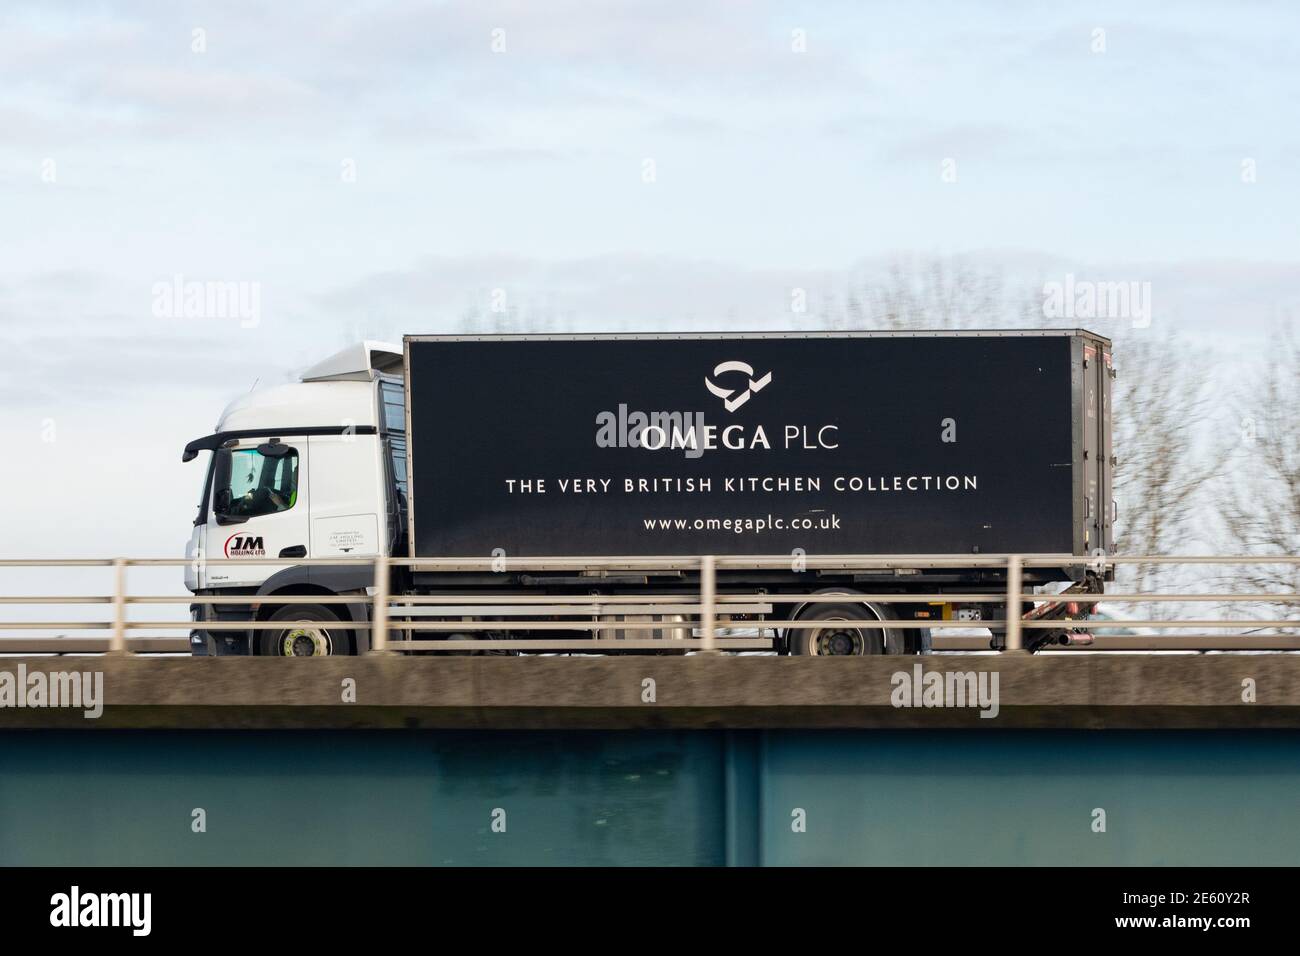 Omega PLC fabricant de cuisine livraison camion - Ecosse, Royaume-Uni Banque D'Images